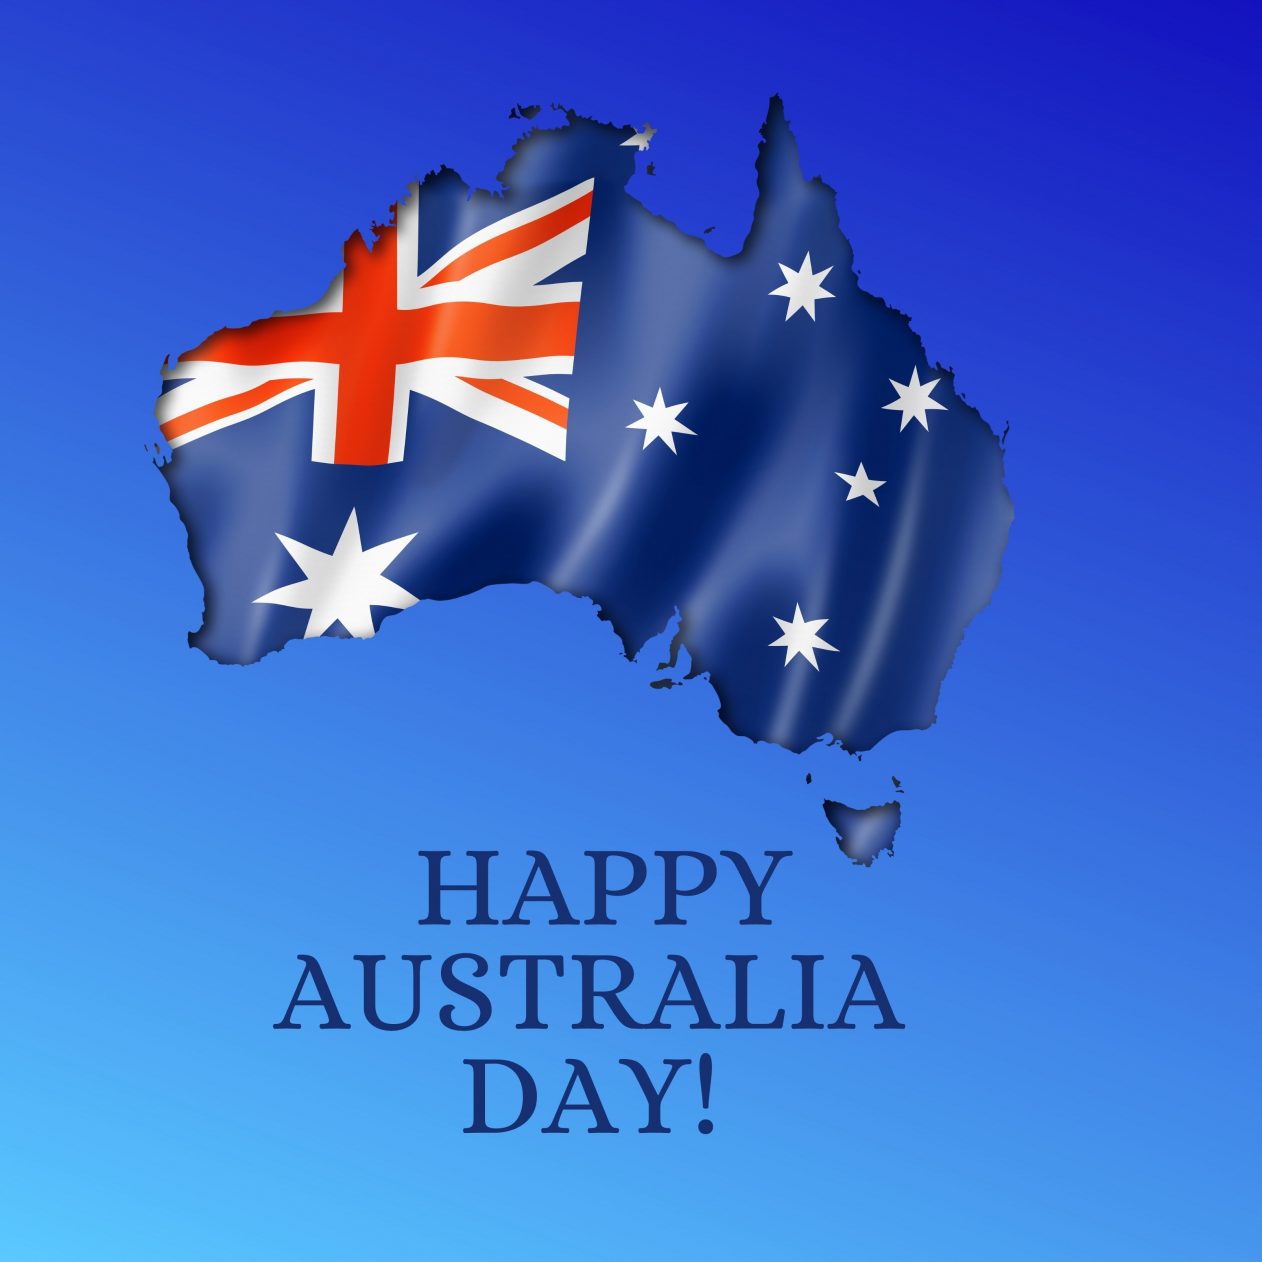 1262x1262 Parallax wallpaper 4k Happy Australia Day iPad Wallpaper 1262x1262 pixels resolution